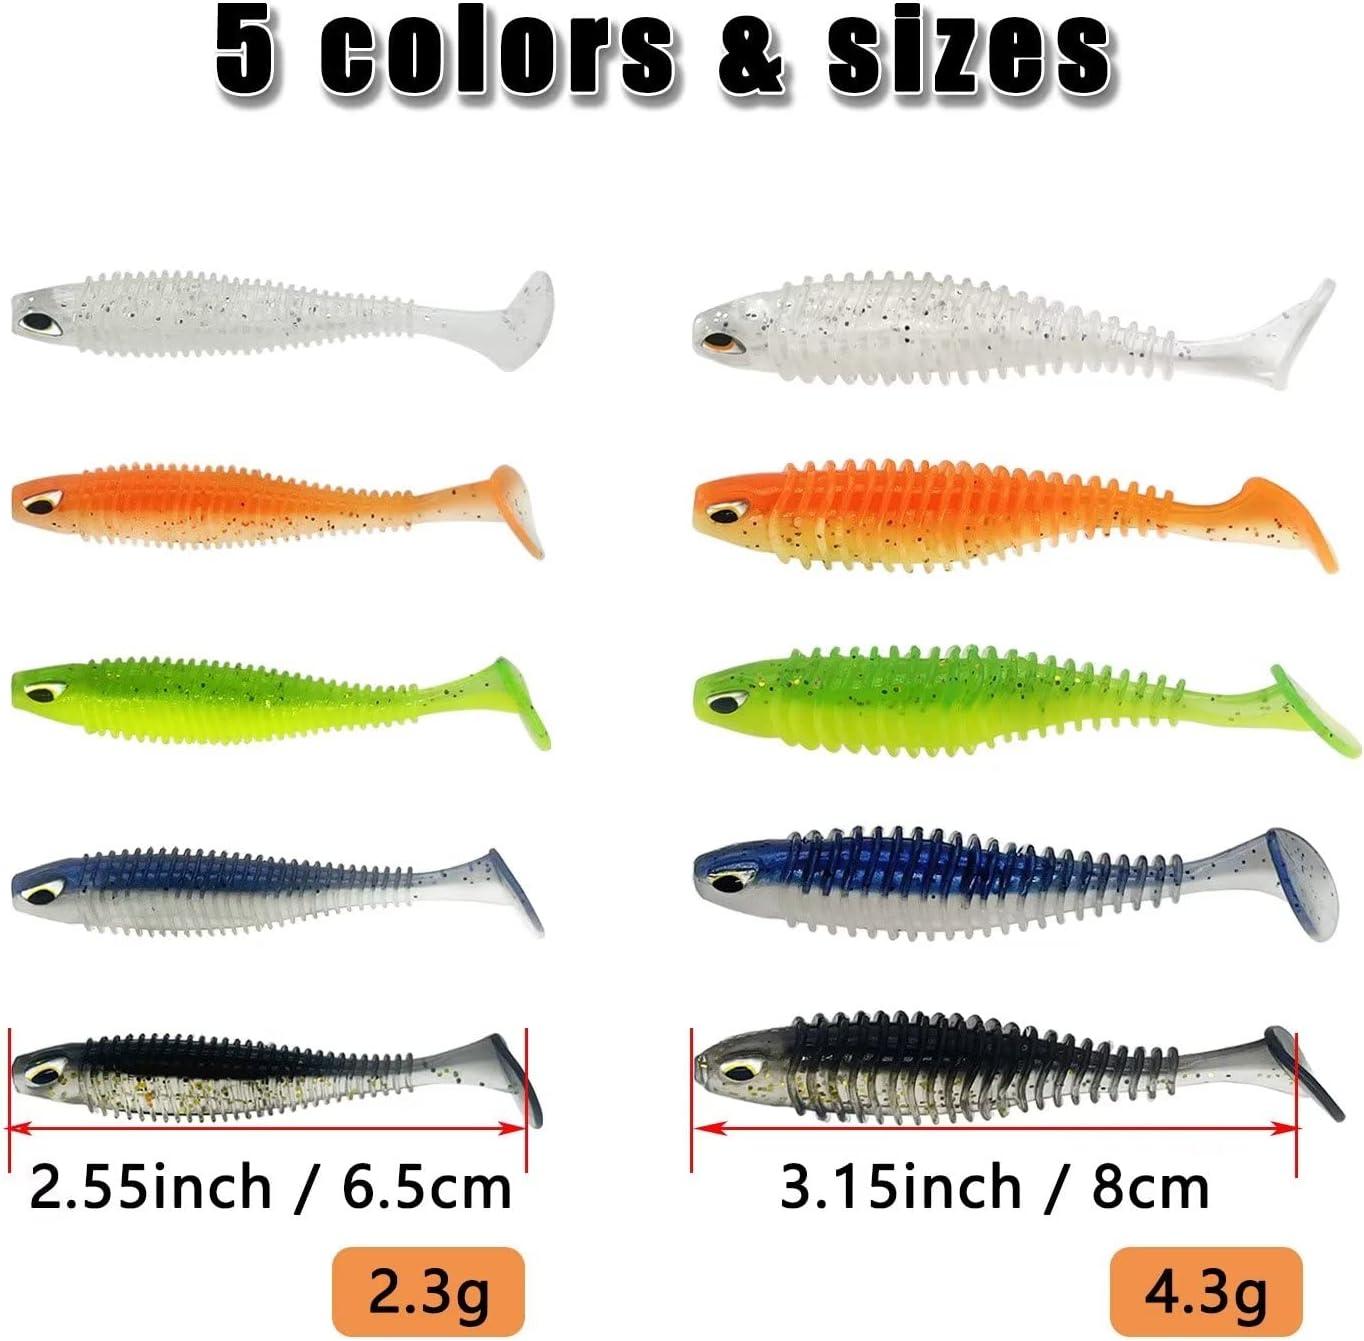 CWSDXM Soft Fishing Lures, 6.5cm/8cm Paddle Tail Swimbaits Soft